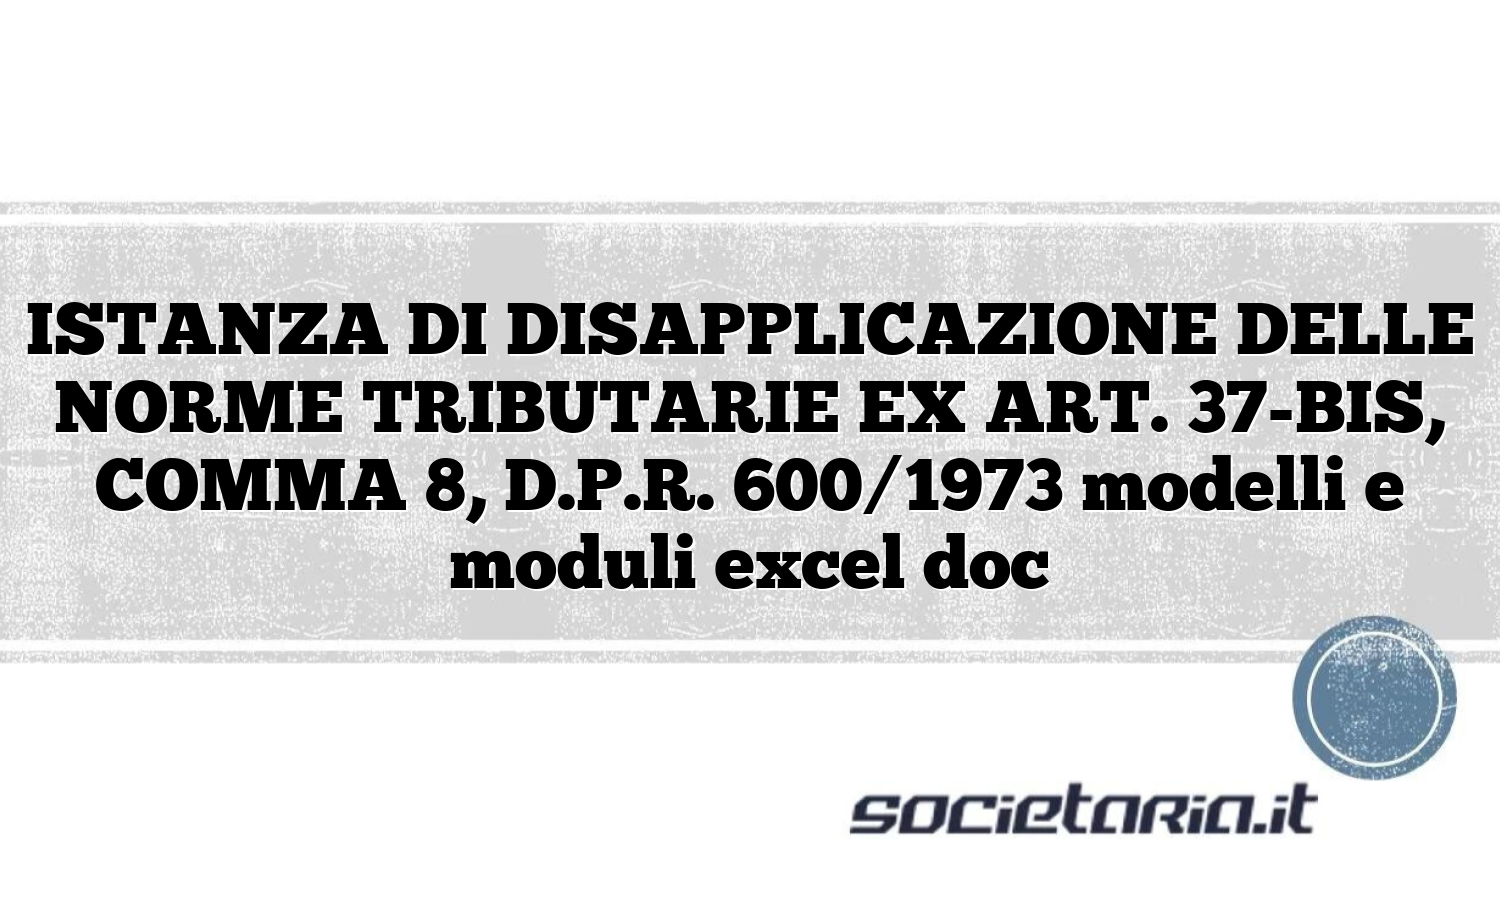 ISTANZA DI DISAPPLICAZIONE DELLE NORME TRIBUTARIE EX ART. 37-BIS, COMMA 8, D.P.R. 600/1973 modelli e moduli excel doc